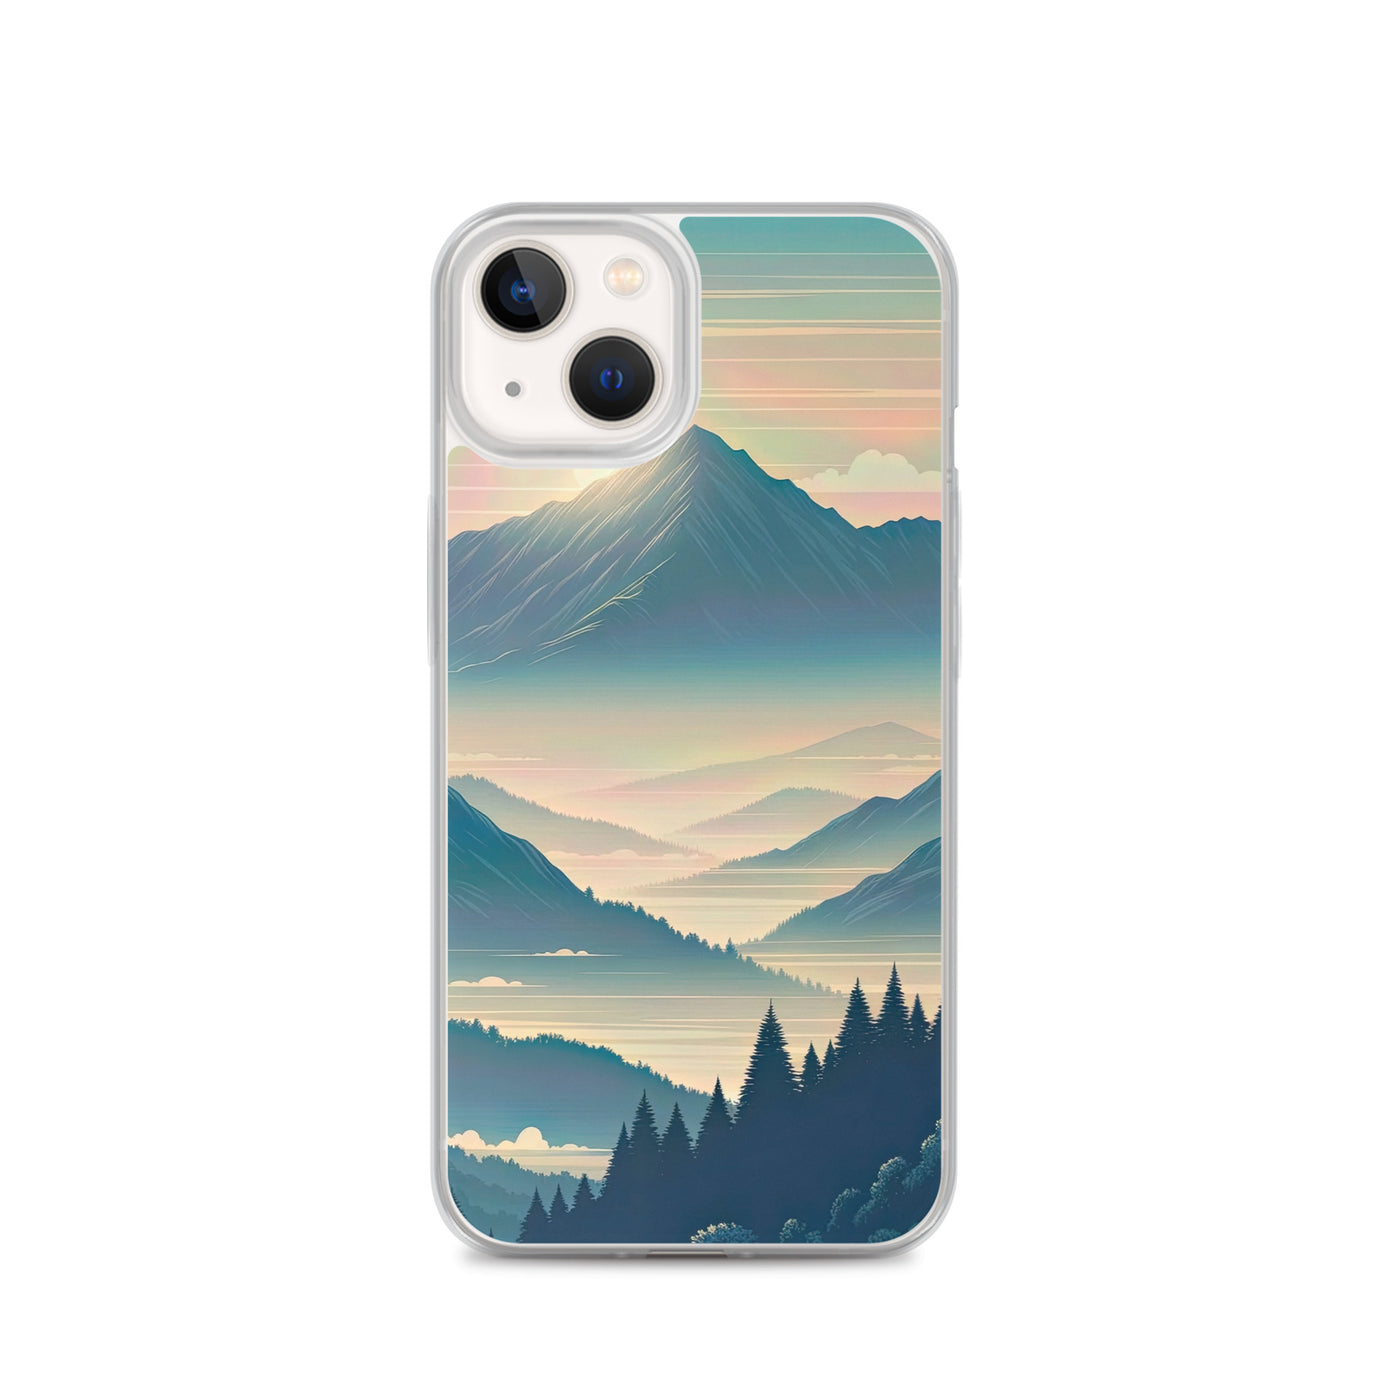 Bergszene bei Morgendämmerung, erste Sonnenstrahlen auf Bergrücken - iPhone Schutzhülle (durchsichtig) berge xxx yyy zzz iPhone 13